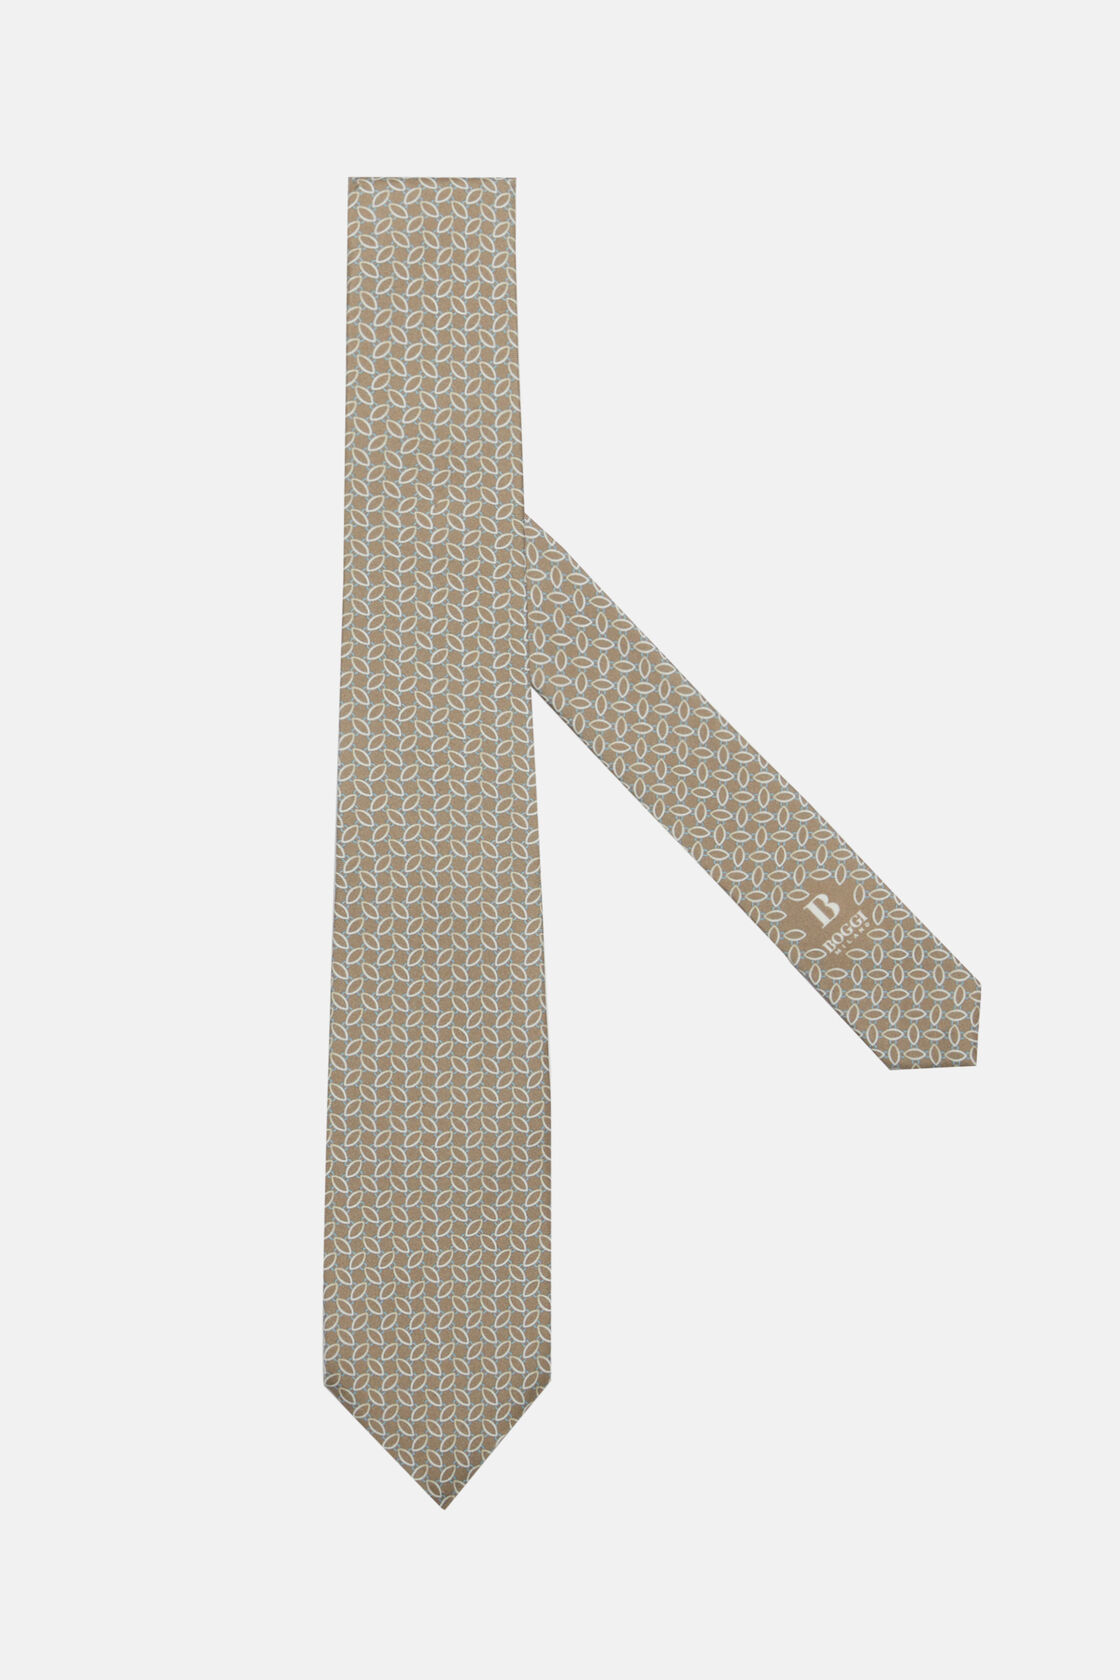 Cravatta Motivo Staffe In Seta, Taupe, hi-res